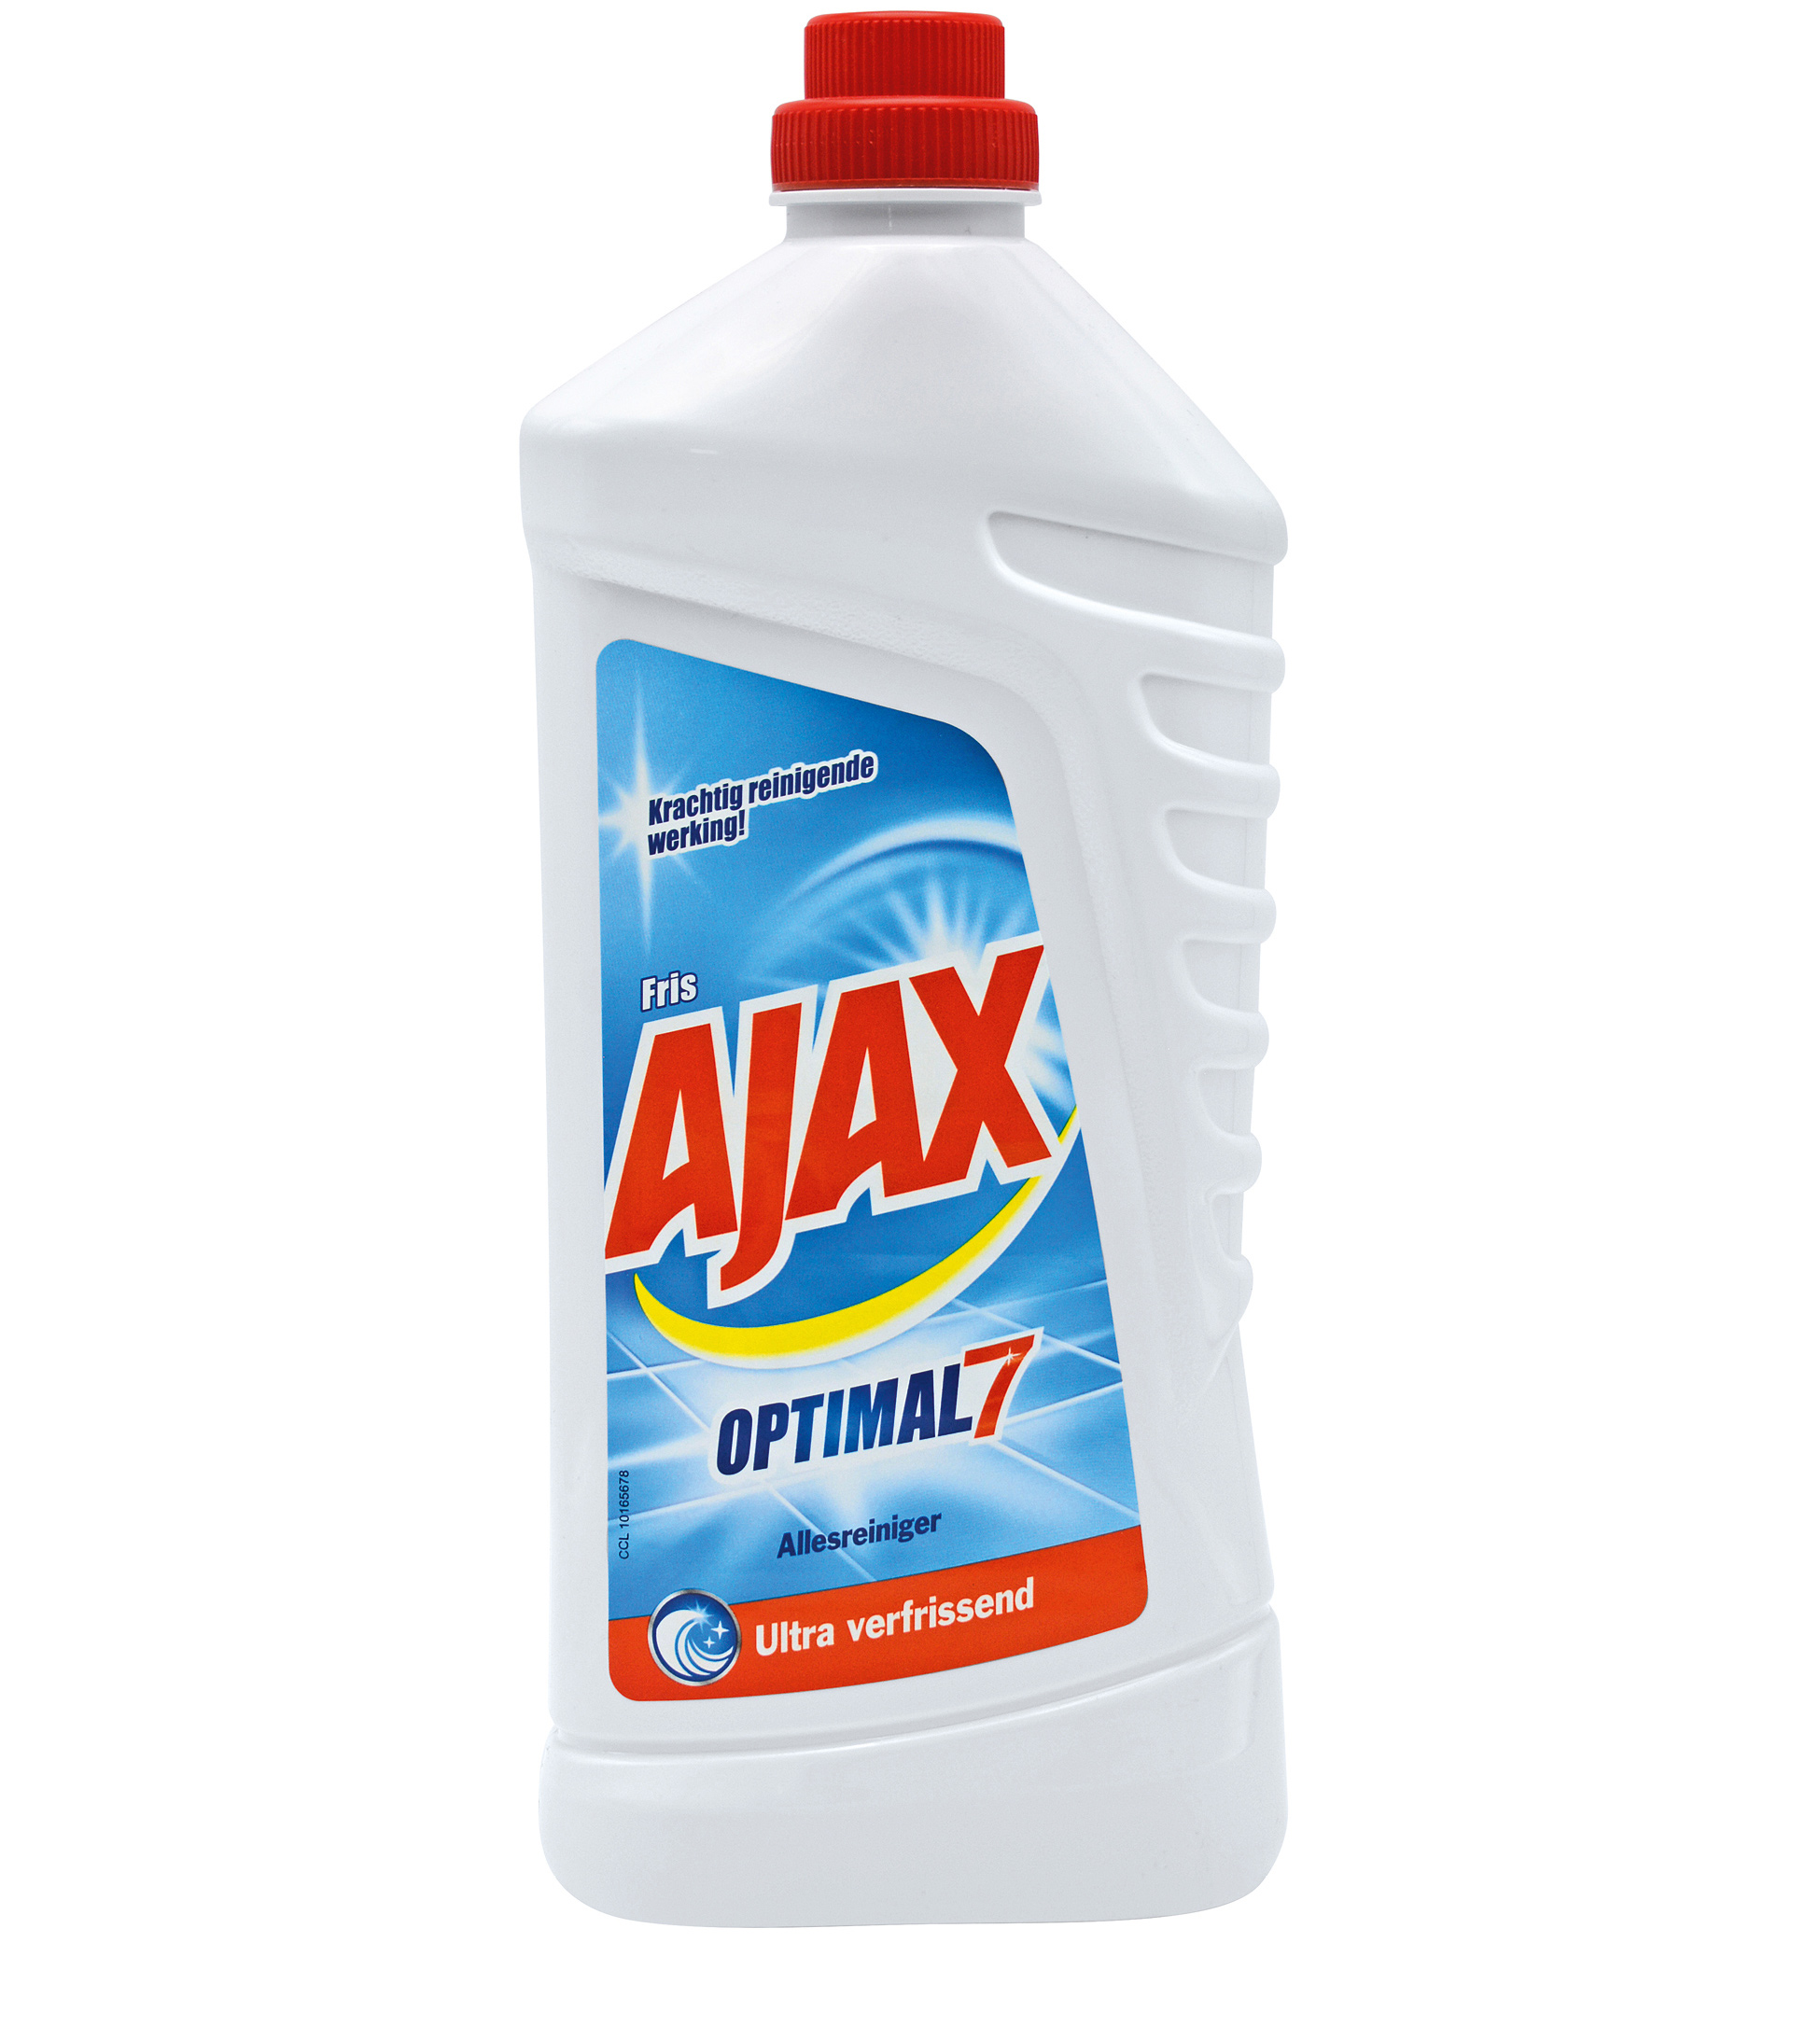 Etiketvelden Detergenten AJAX ZONDER NUMMERS